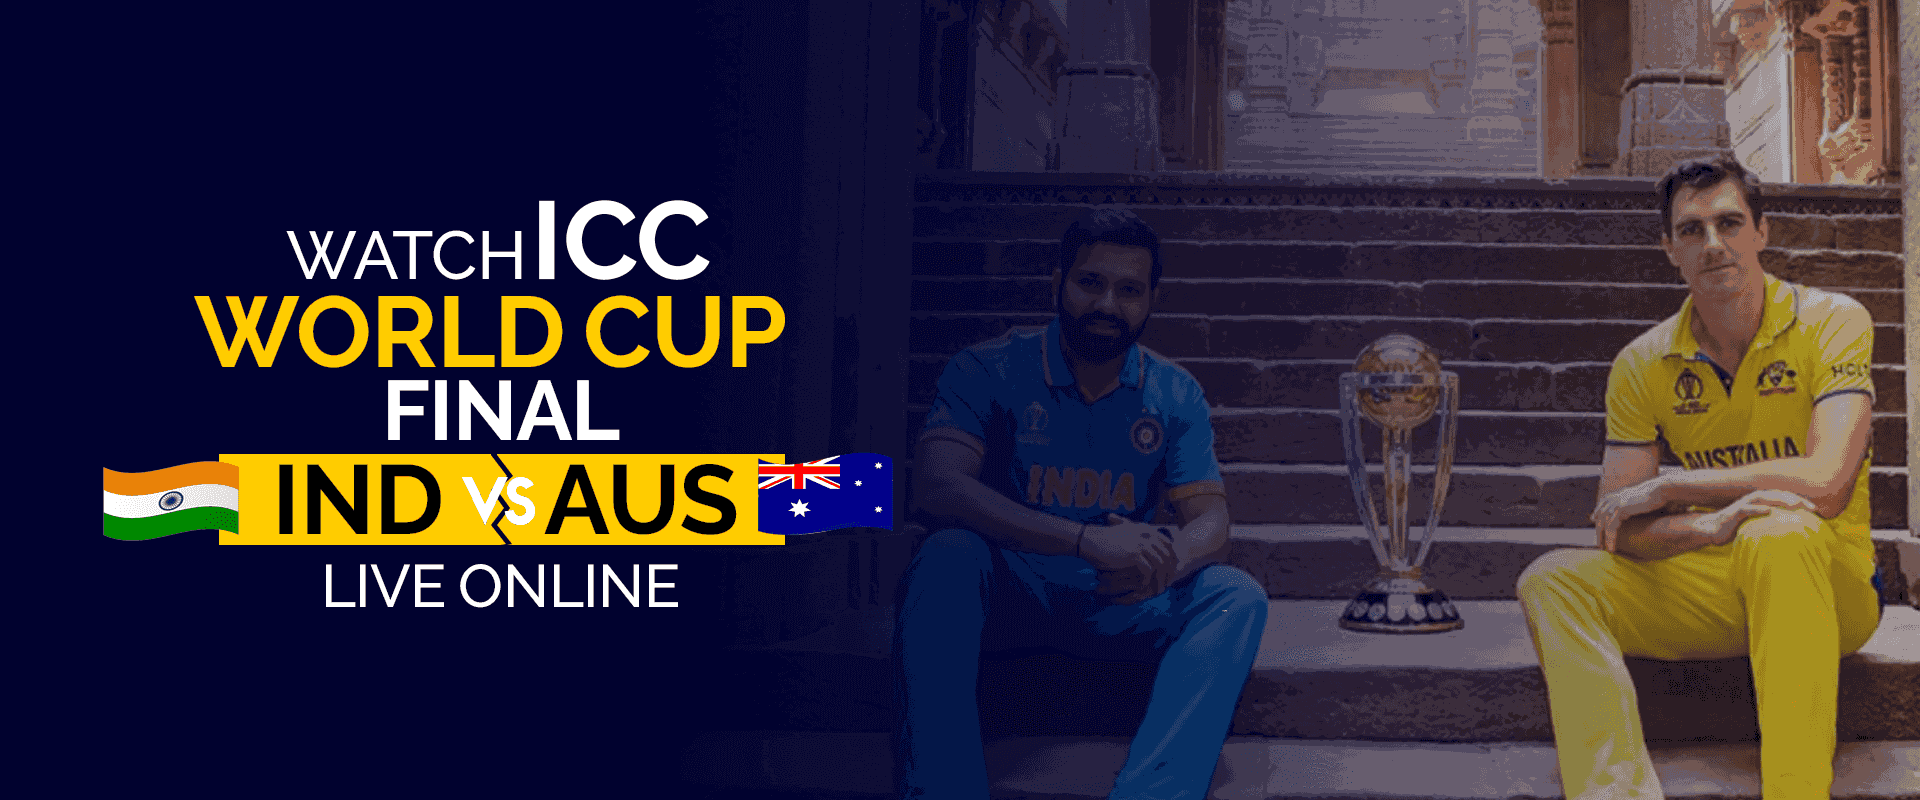 Guarda la finale mondiale dell'ICC IND vs AUS in diretta online